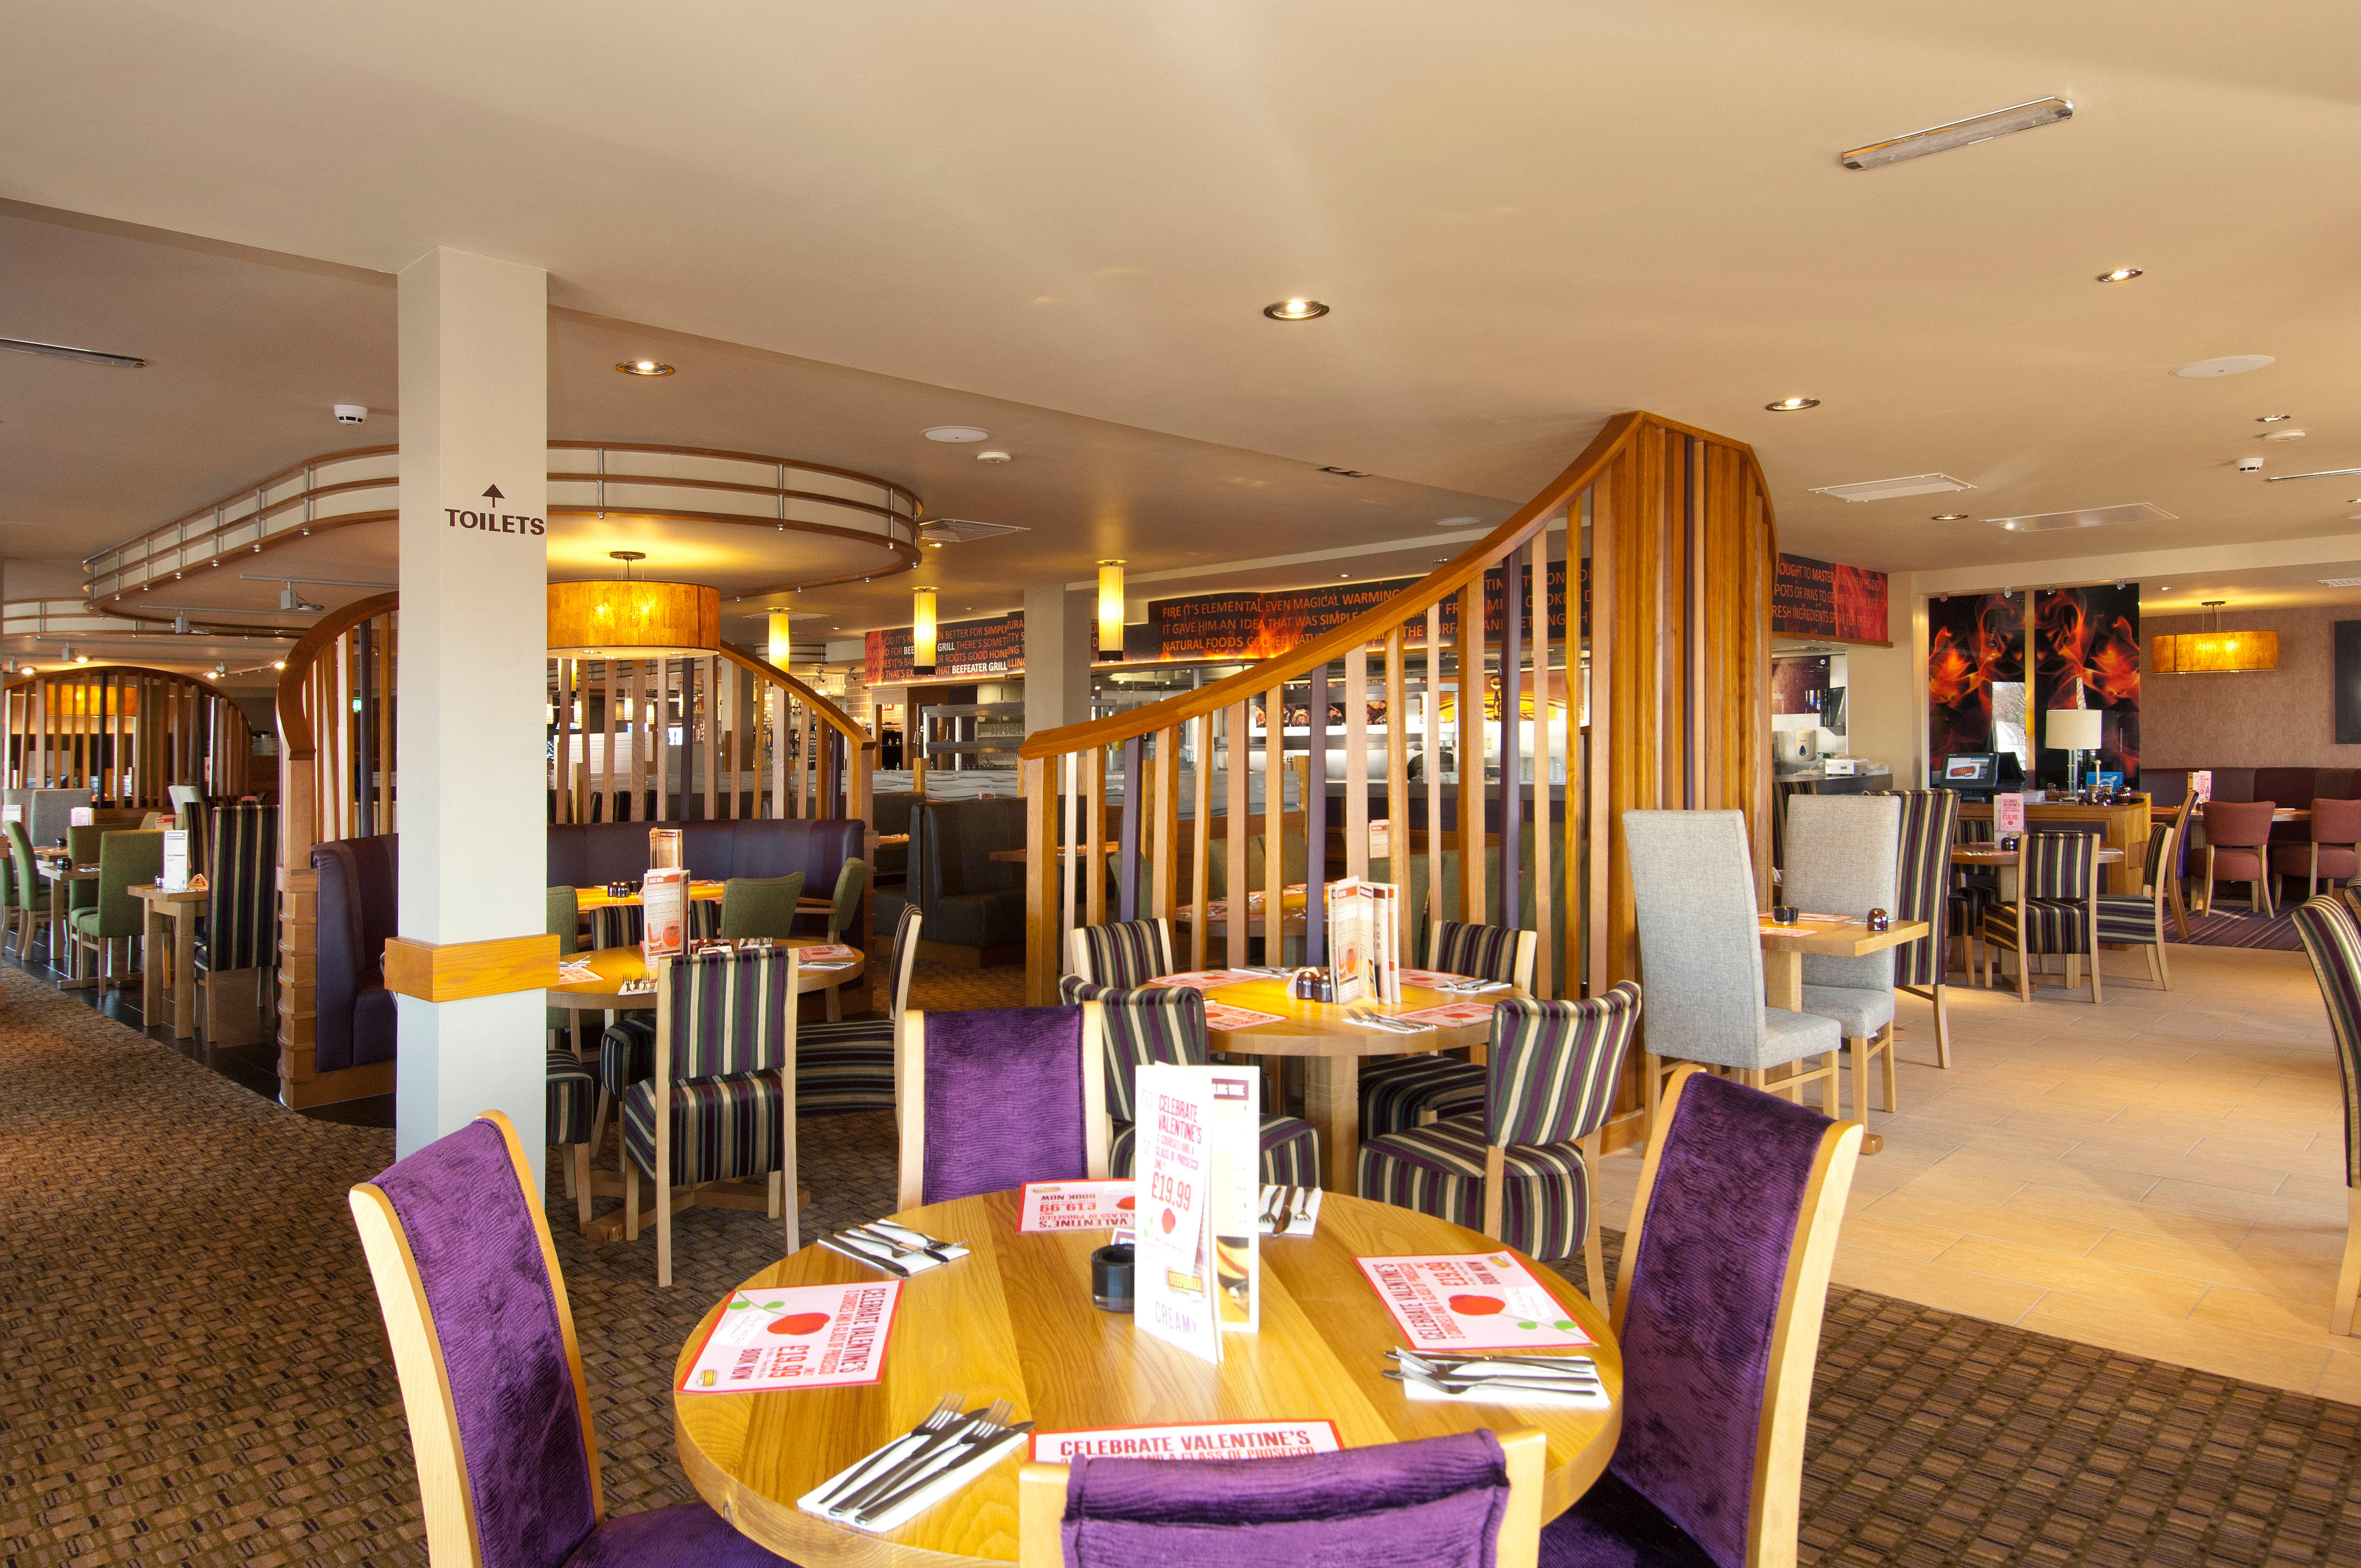 Beefeater restaurant interior Premier Inn Newton Abbot hotel Newton Abbot 03333 219234